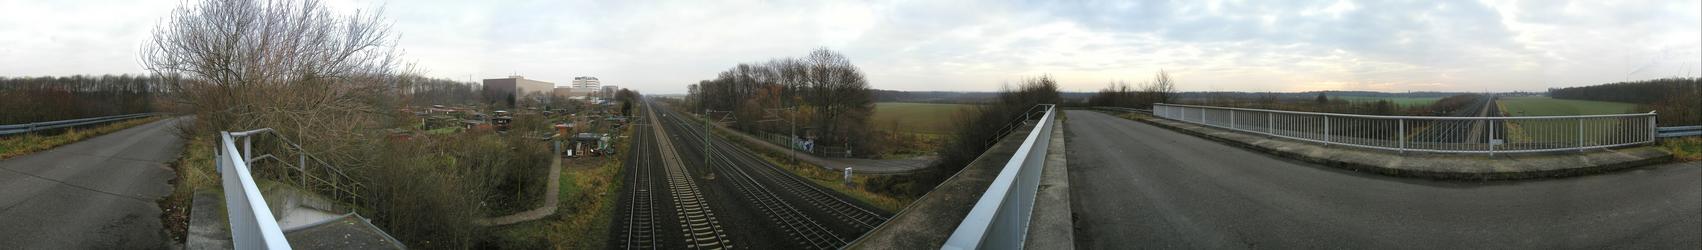 360 degree panorama from the bridge